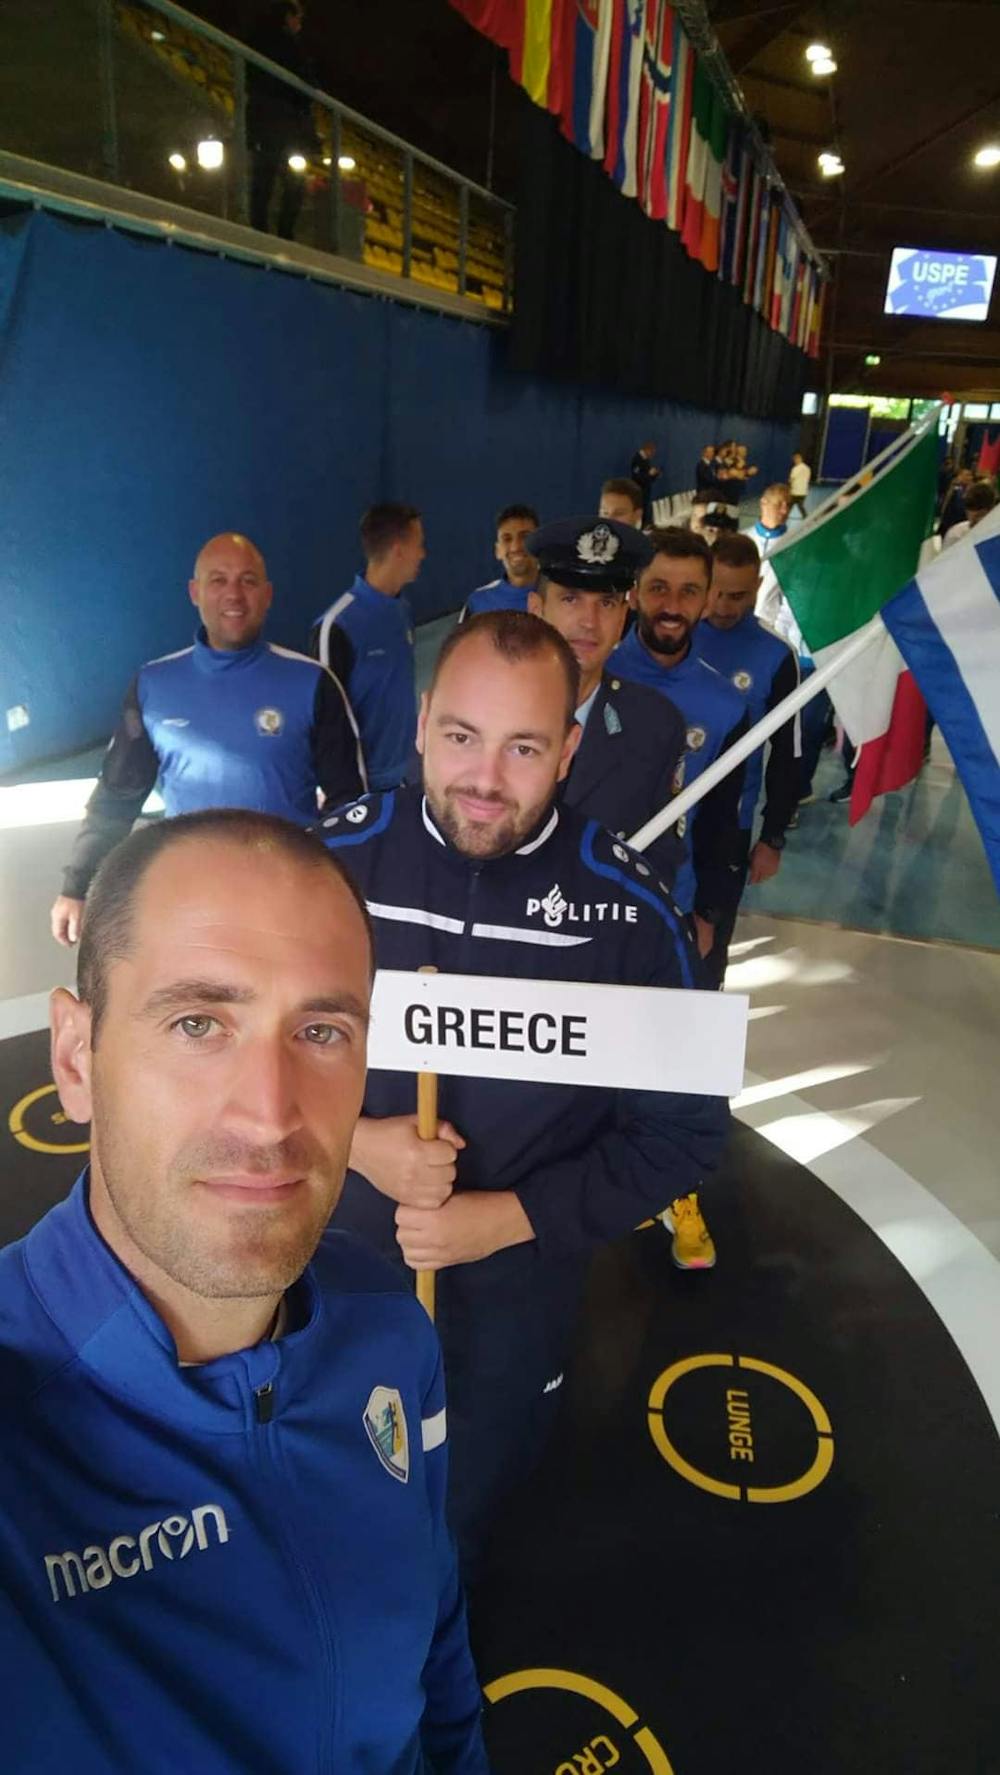 Έφτασαν Αϊντχόφεν για το Πανευρωπαϊκό πρωτάθλημα Μαραθωνίου Αστυνομικών και ετοιμάζονται για μεγάλες επιδόσεις οι πέντε Έλληνες αθλητές (Pics) runbeat.gr 